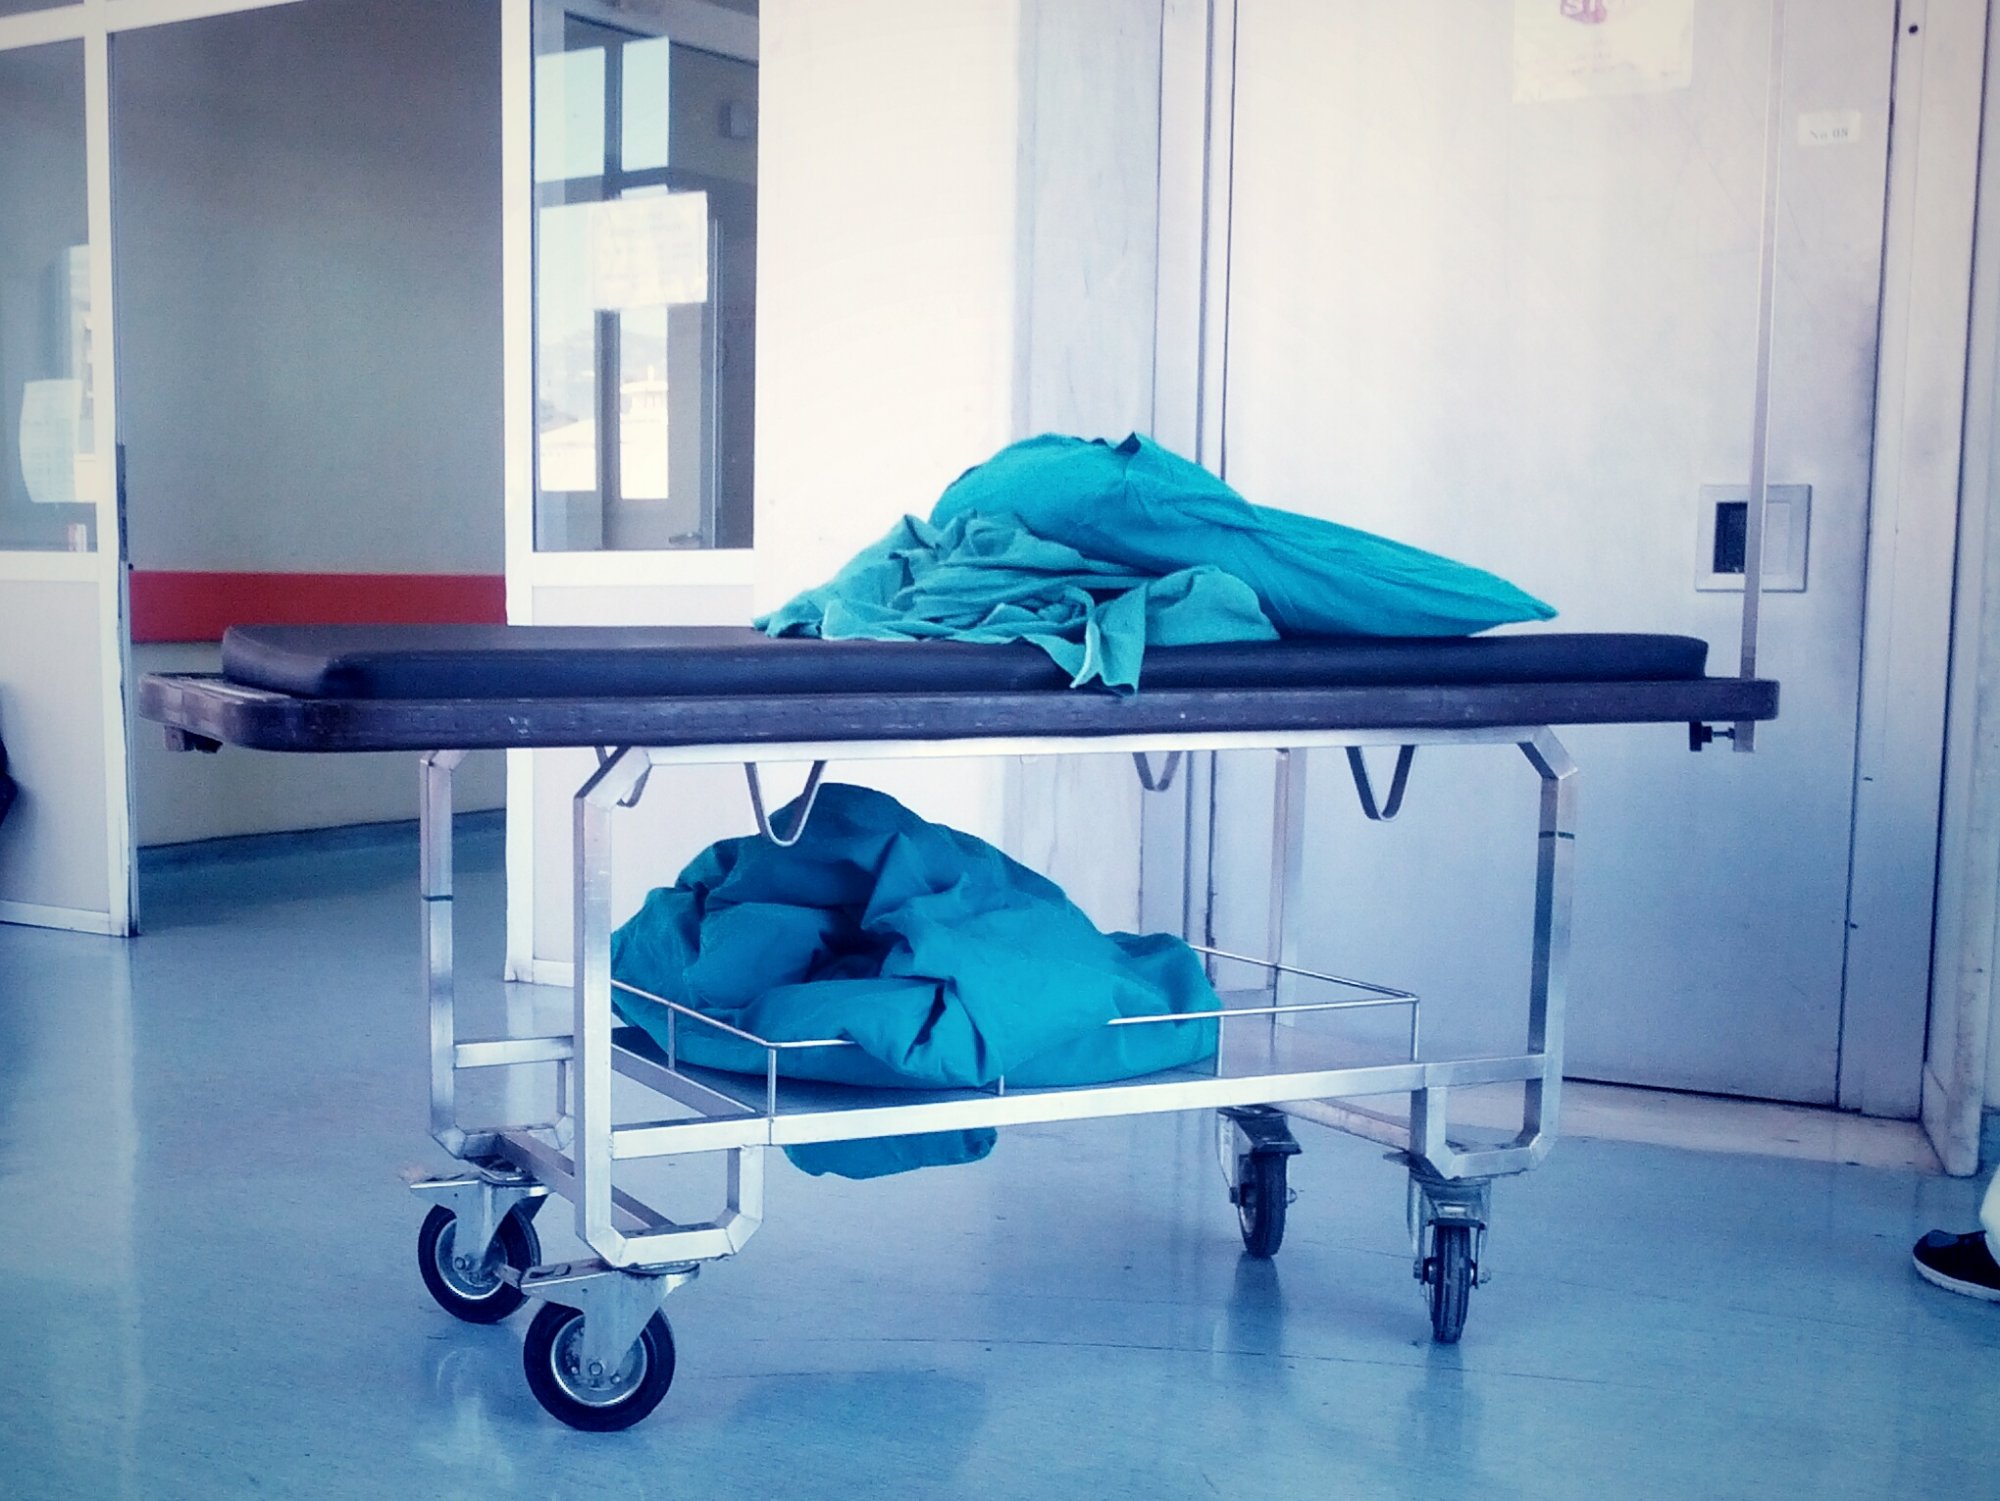 Νοσοκομείο Ιωαννίνων: Μπλόκαραν απογευματινό χειρουργείο - Προγραμμάτισαν πρωινό και δωρεάν την ίδια μέρα